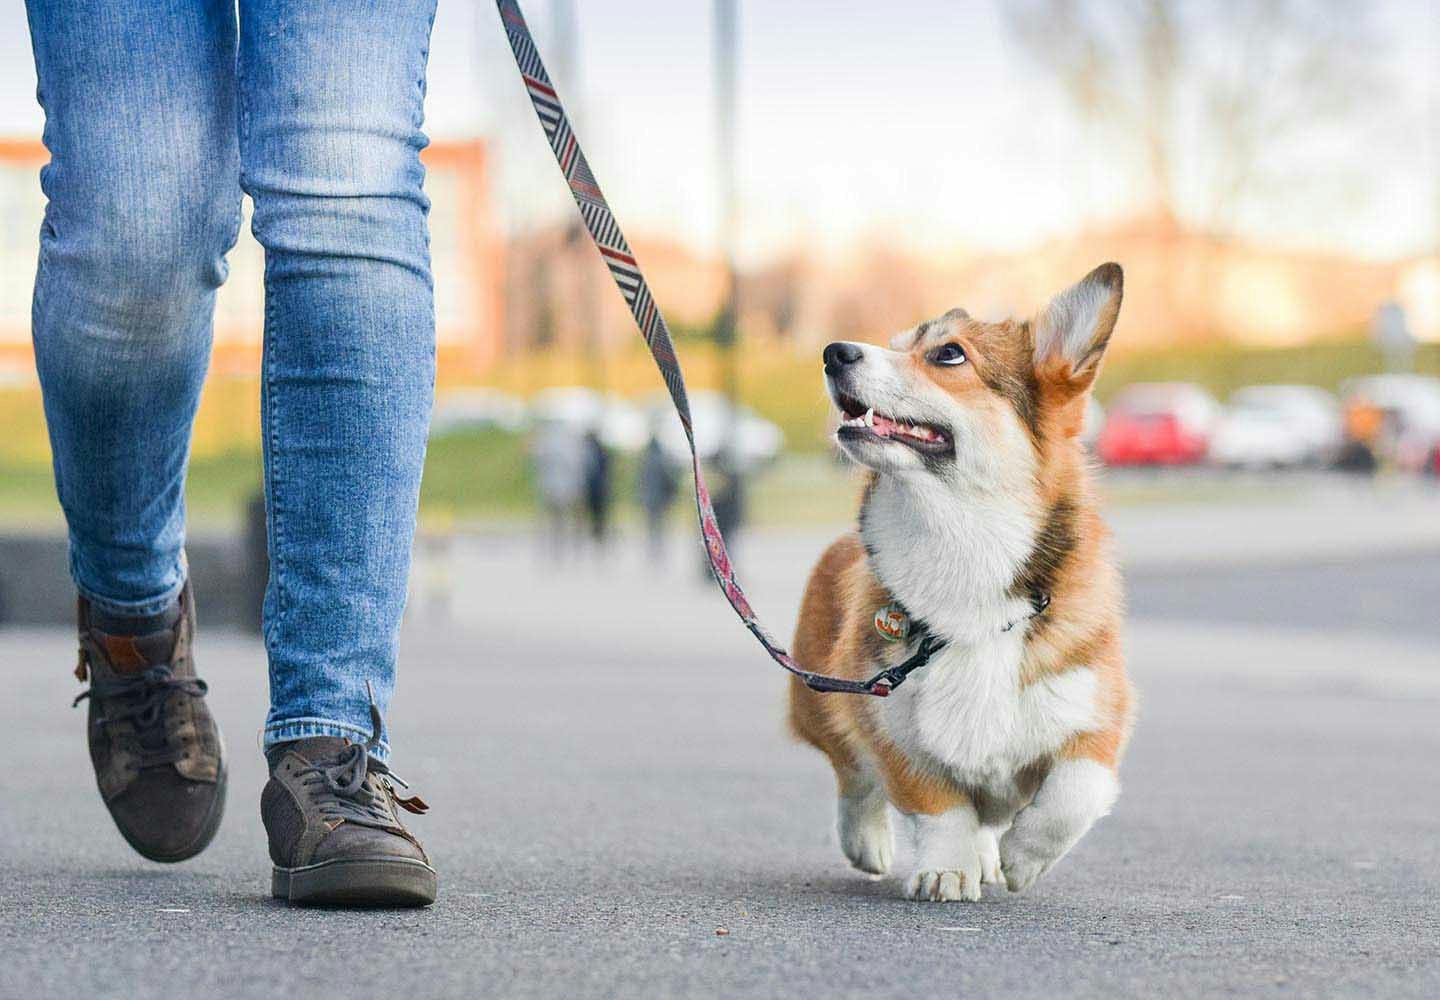 【獣医師監修】犬の分離不安症とは？原因や問題行動への対処法、改善の仕方について解説